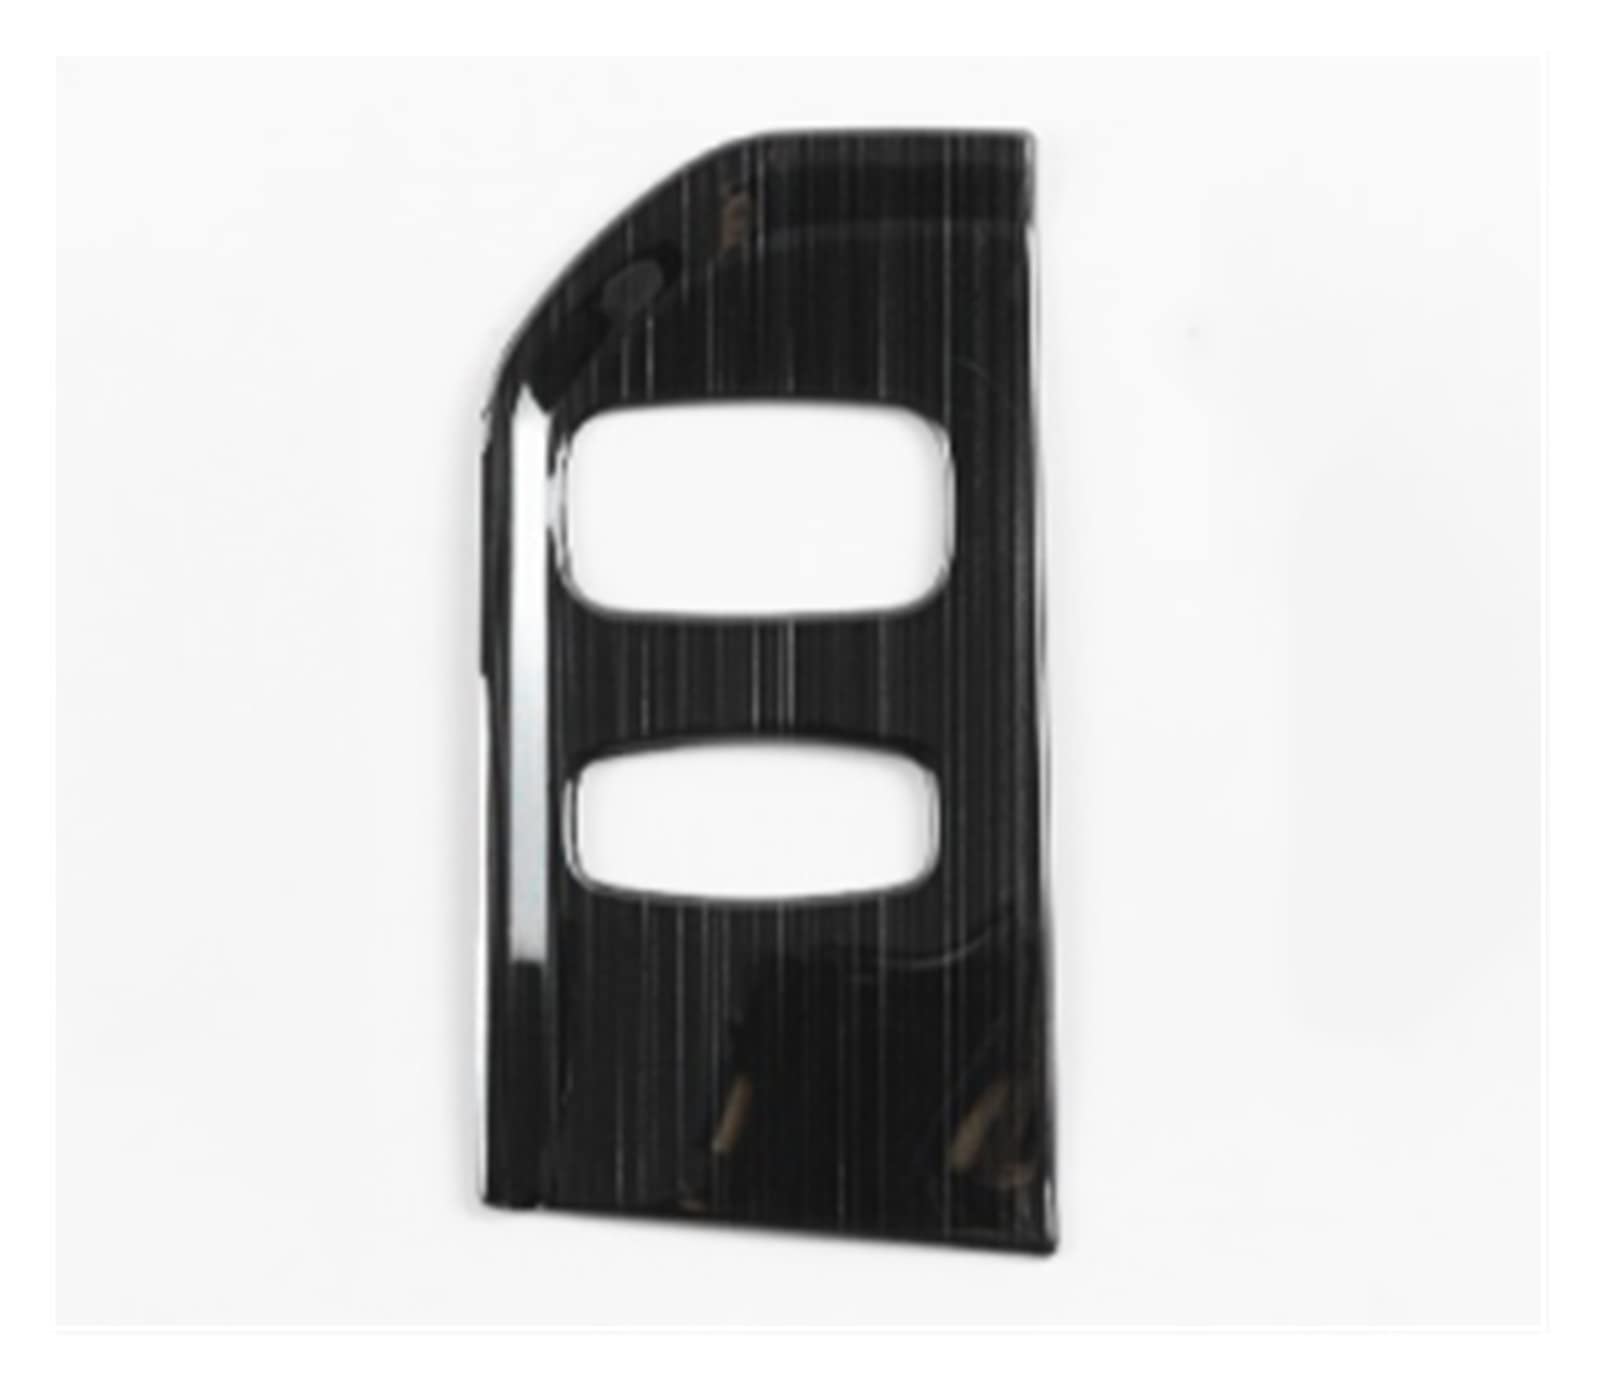 AANAN Edelstahl Auto Styling Konsole Schlüsselloch Panel Rahmen Abdeckung Trim Kompatibel Mit XC60 2013-2017 LHD Innen Zubehör Aufkleber(Svart) von AANAN